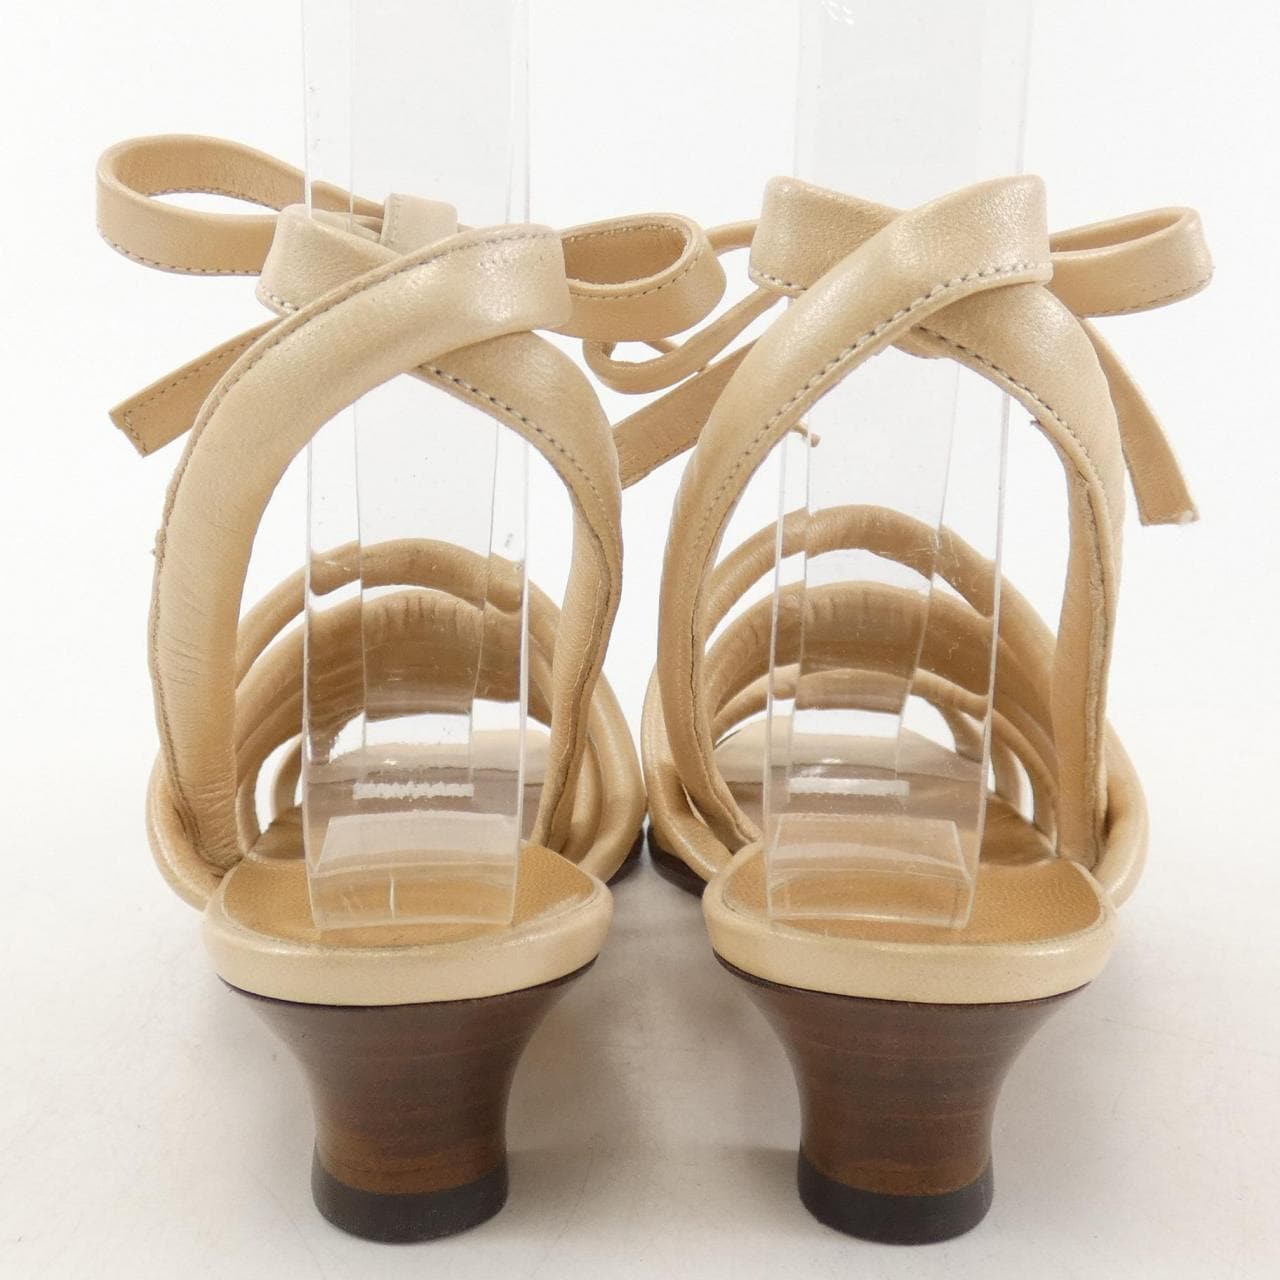 [vintage] HERMES sandals